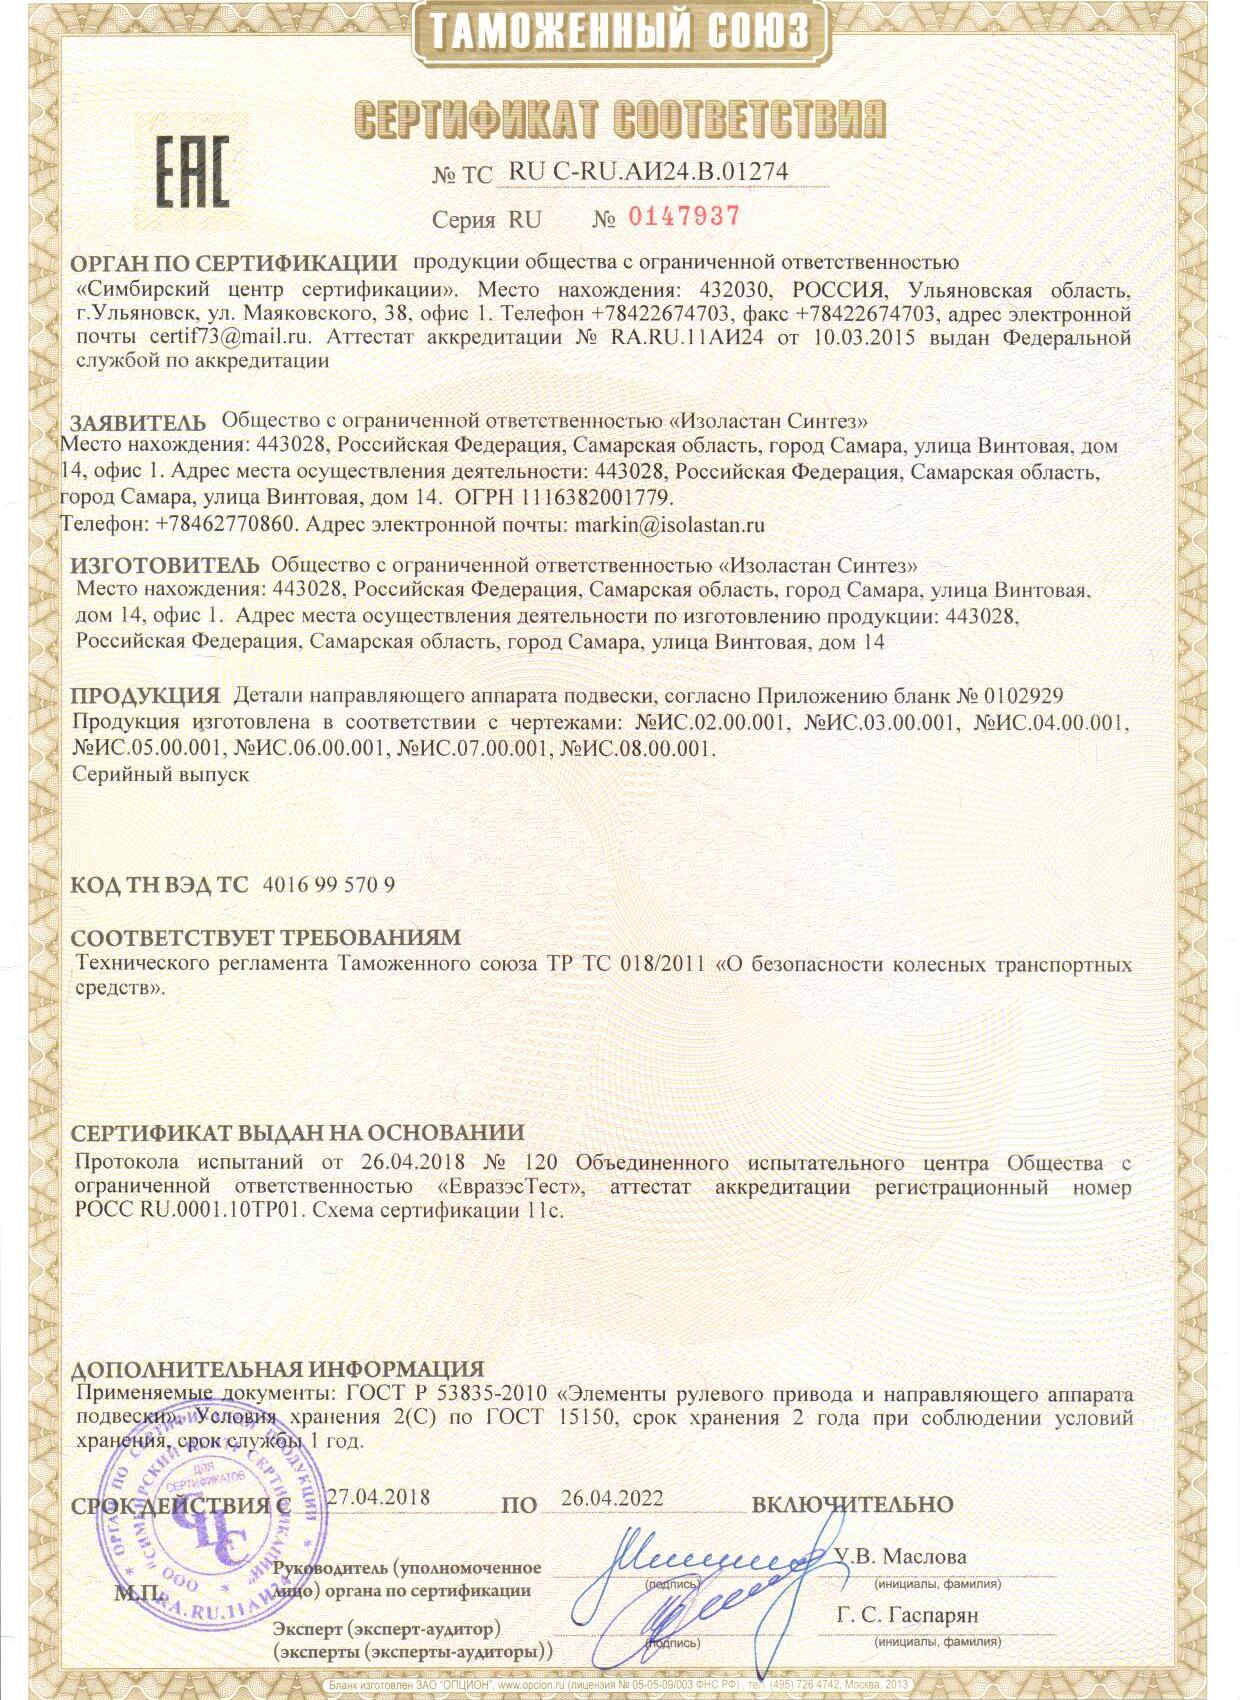 Сертификат соответствия техническому регламенту Таможенного союза